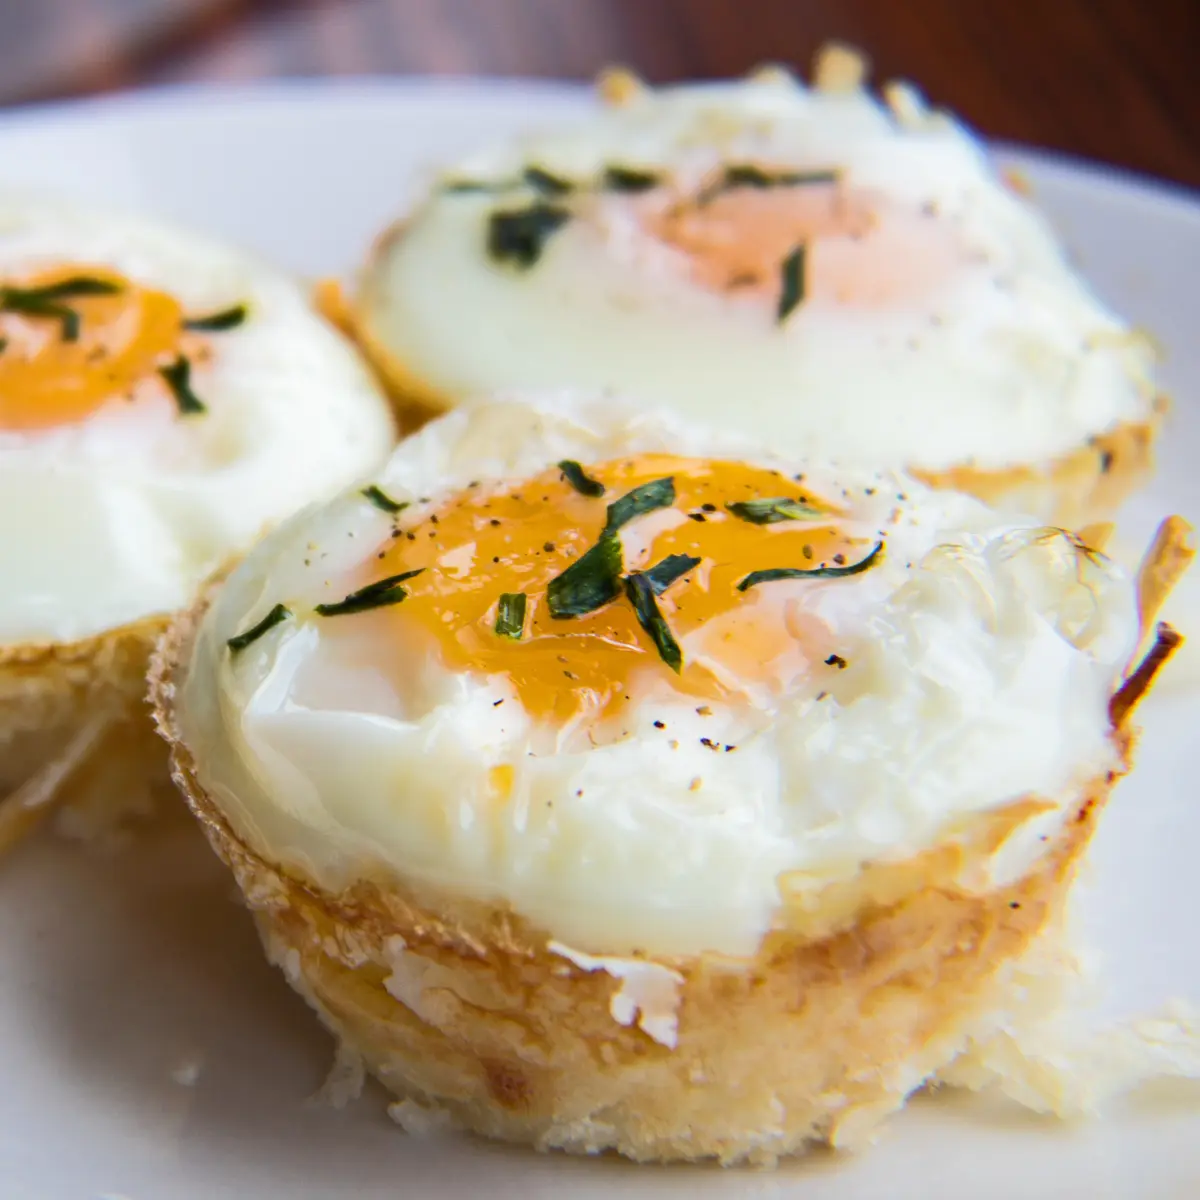 Diese super einfach zu backenden haschbraunen Eierbecher sind ein leckeres Frühstück für unterwegs, das in Muffinformen gebacken wird!